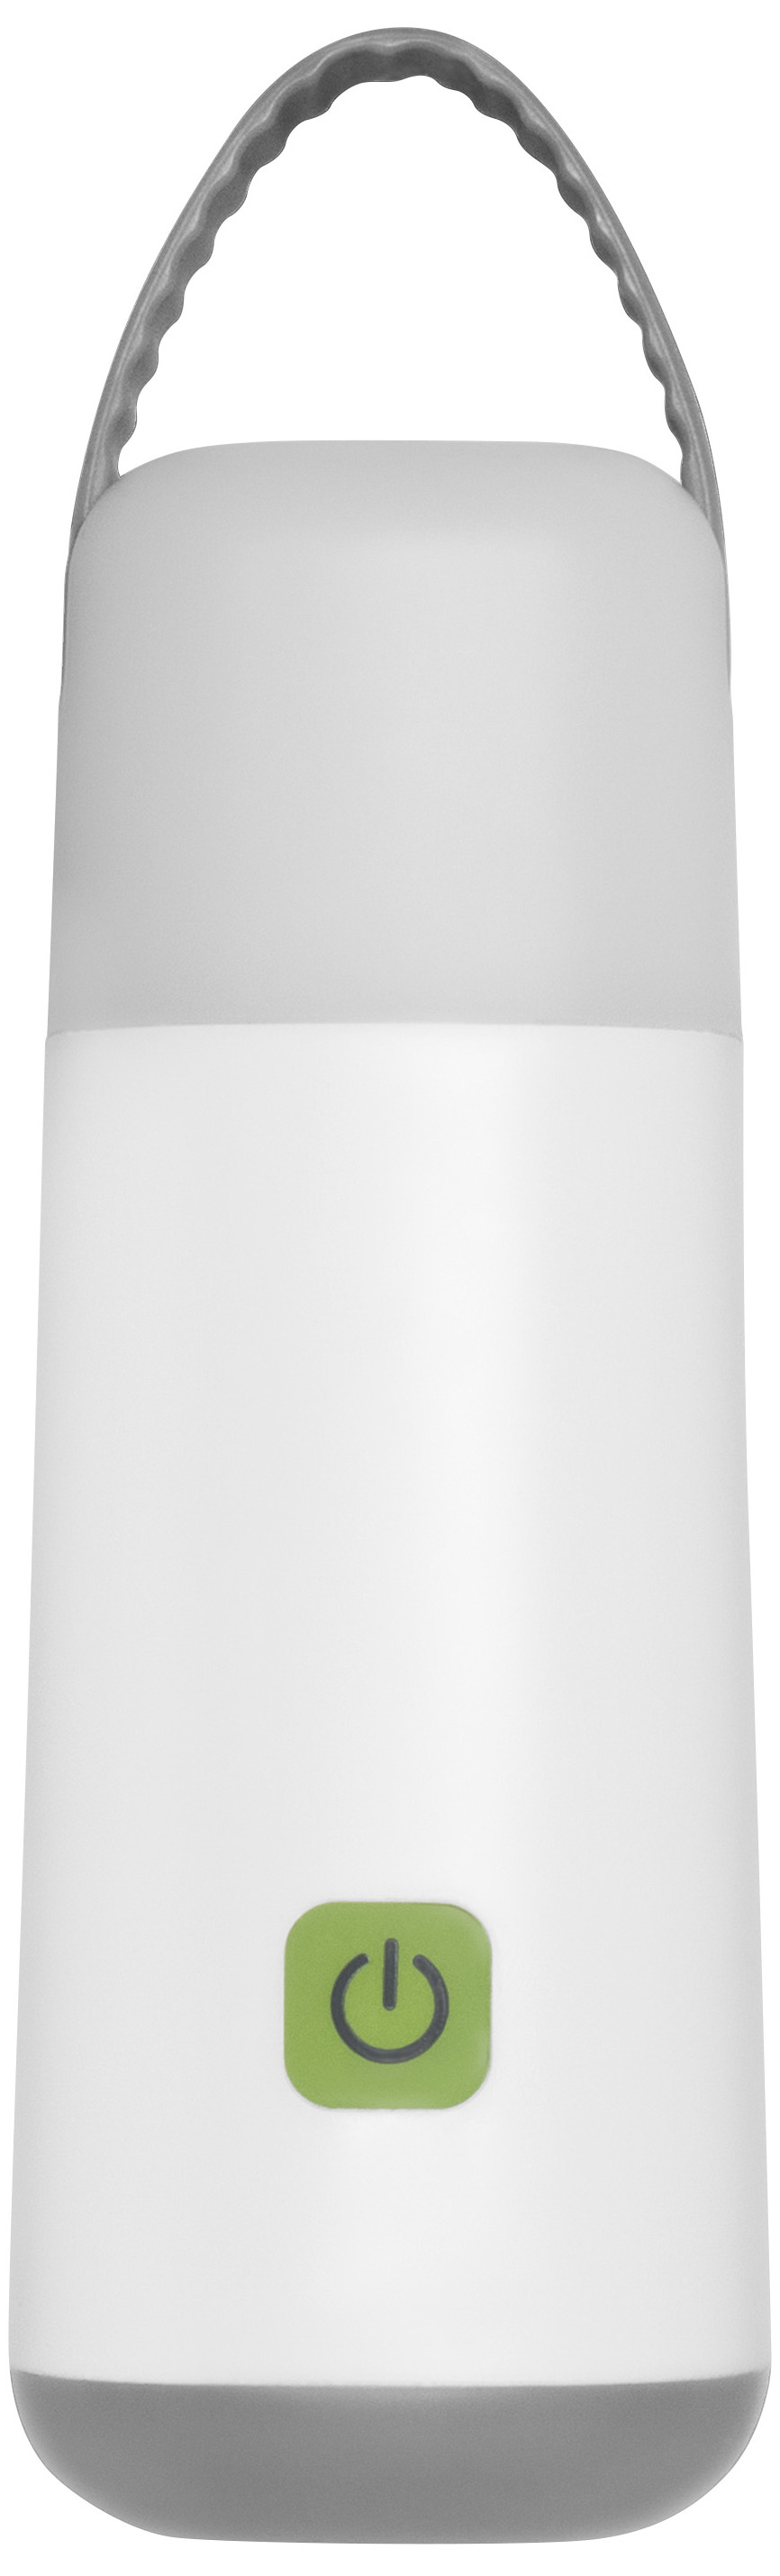 Светильник Ledvance NIGHTLUX MOBILE 5V 6XBLI1 UNP (4058075570207) в интернет-магазине, главное фото